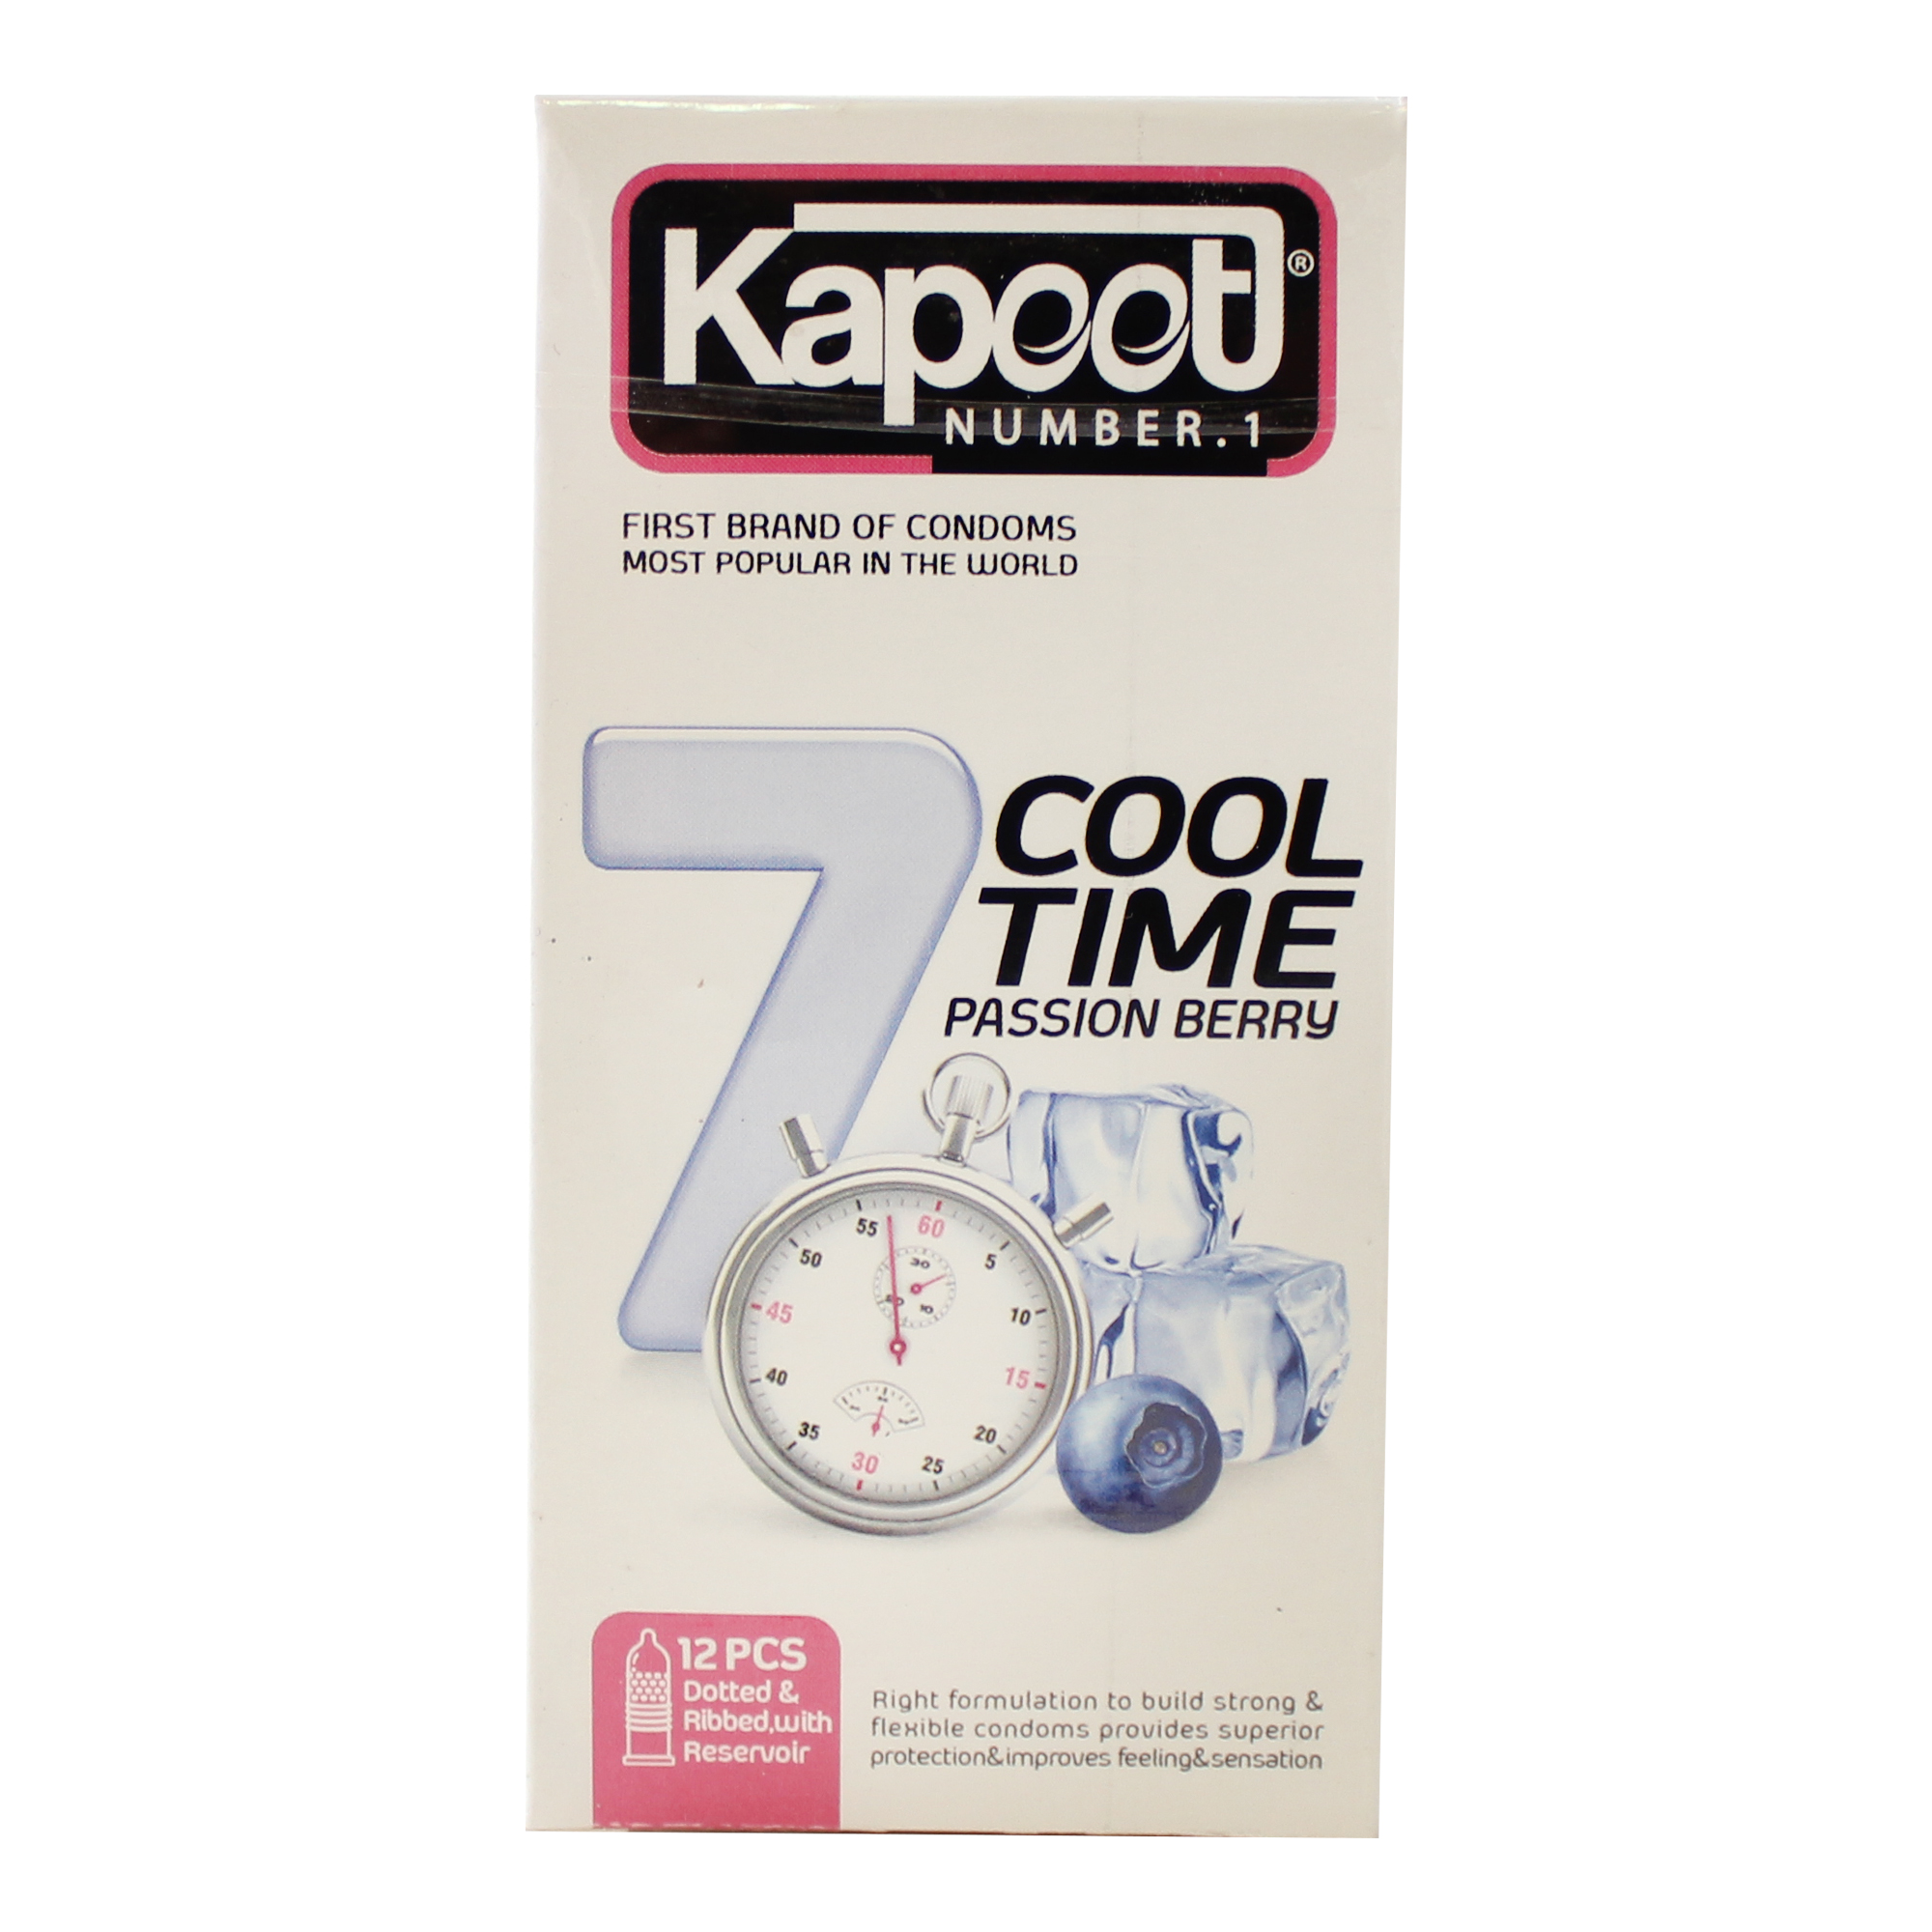 کاندوم کاپوت مدل 7Cool Time بسته 12 عددی